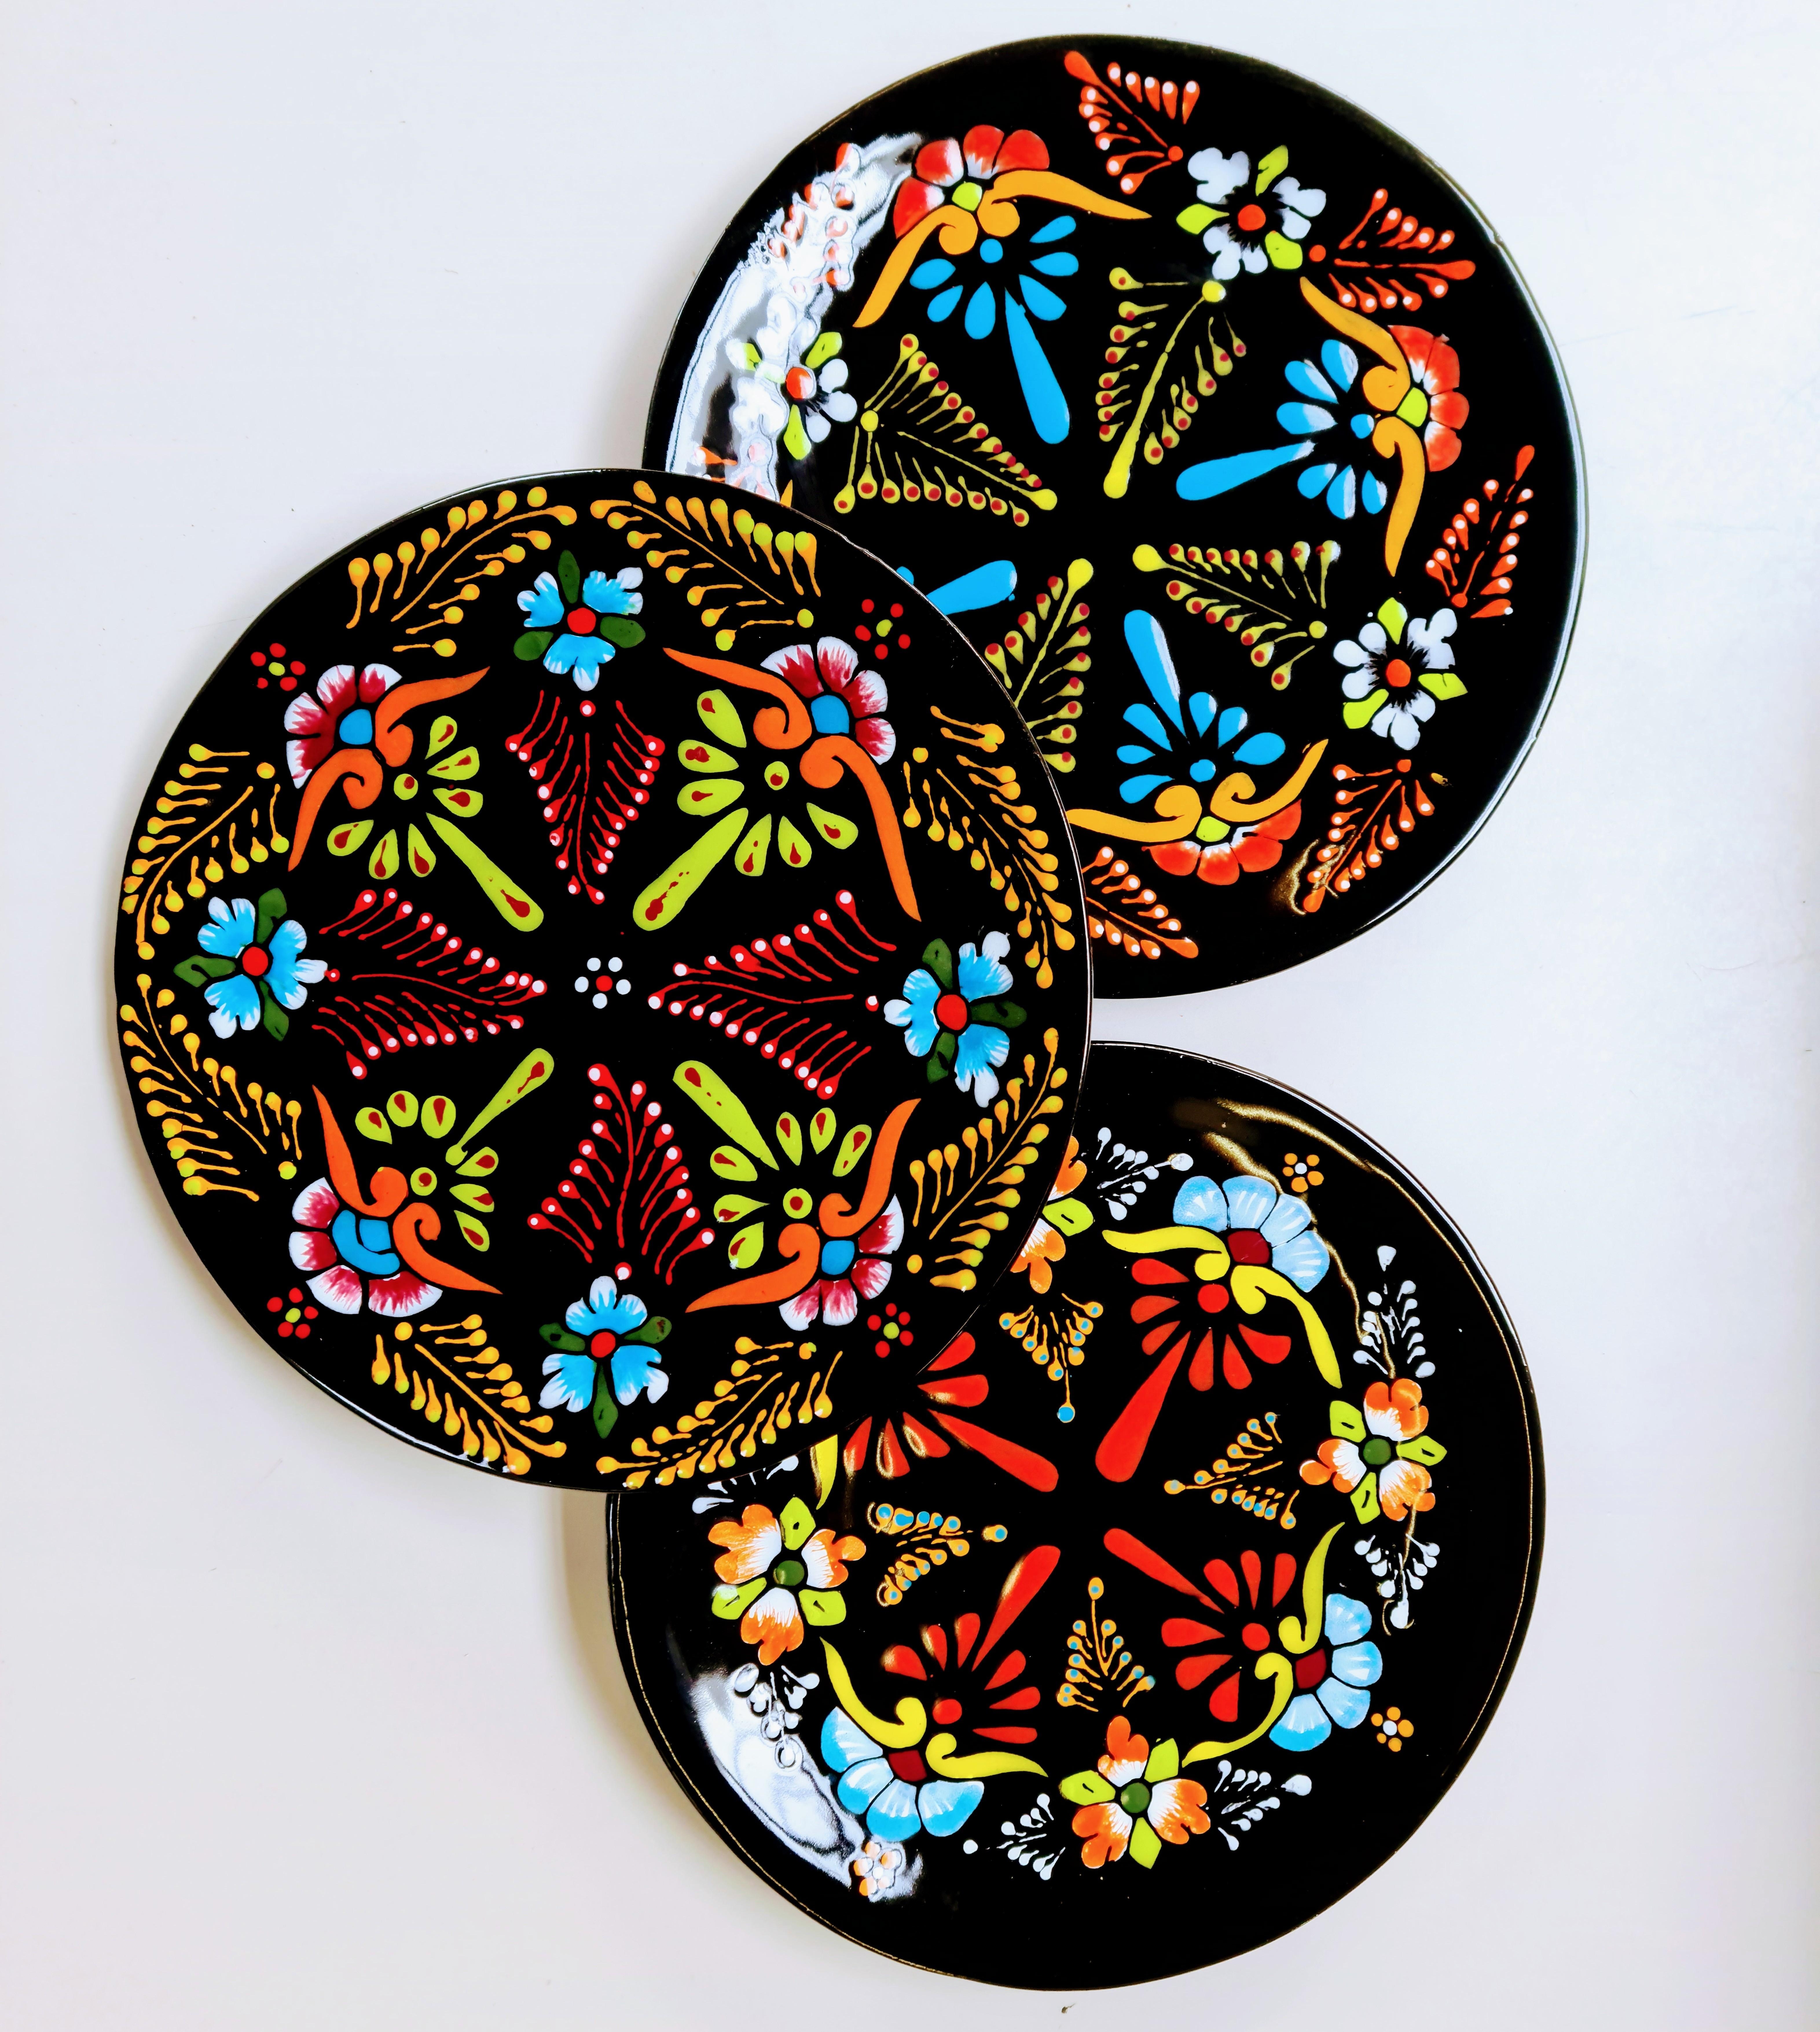 Handbemaltes #geschirr in floralem Design für eine ausgefallene #tischdeko